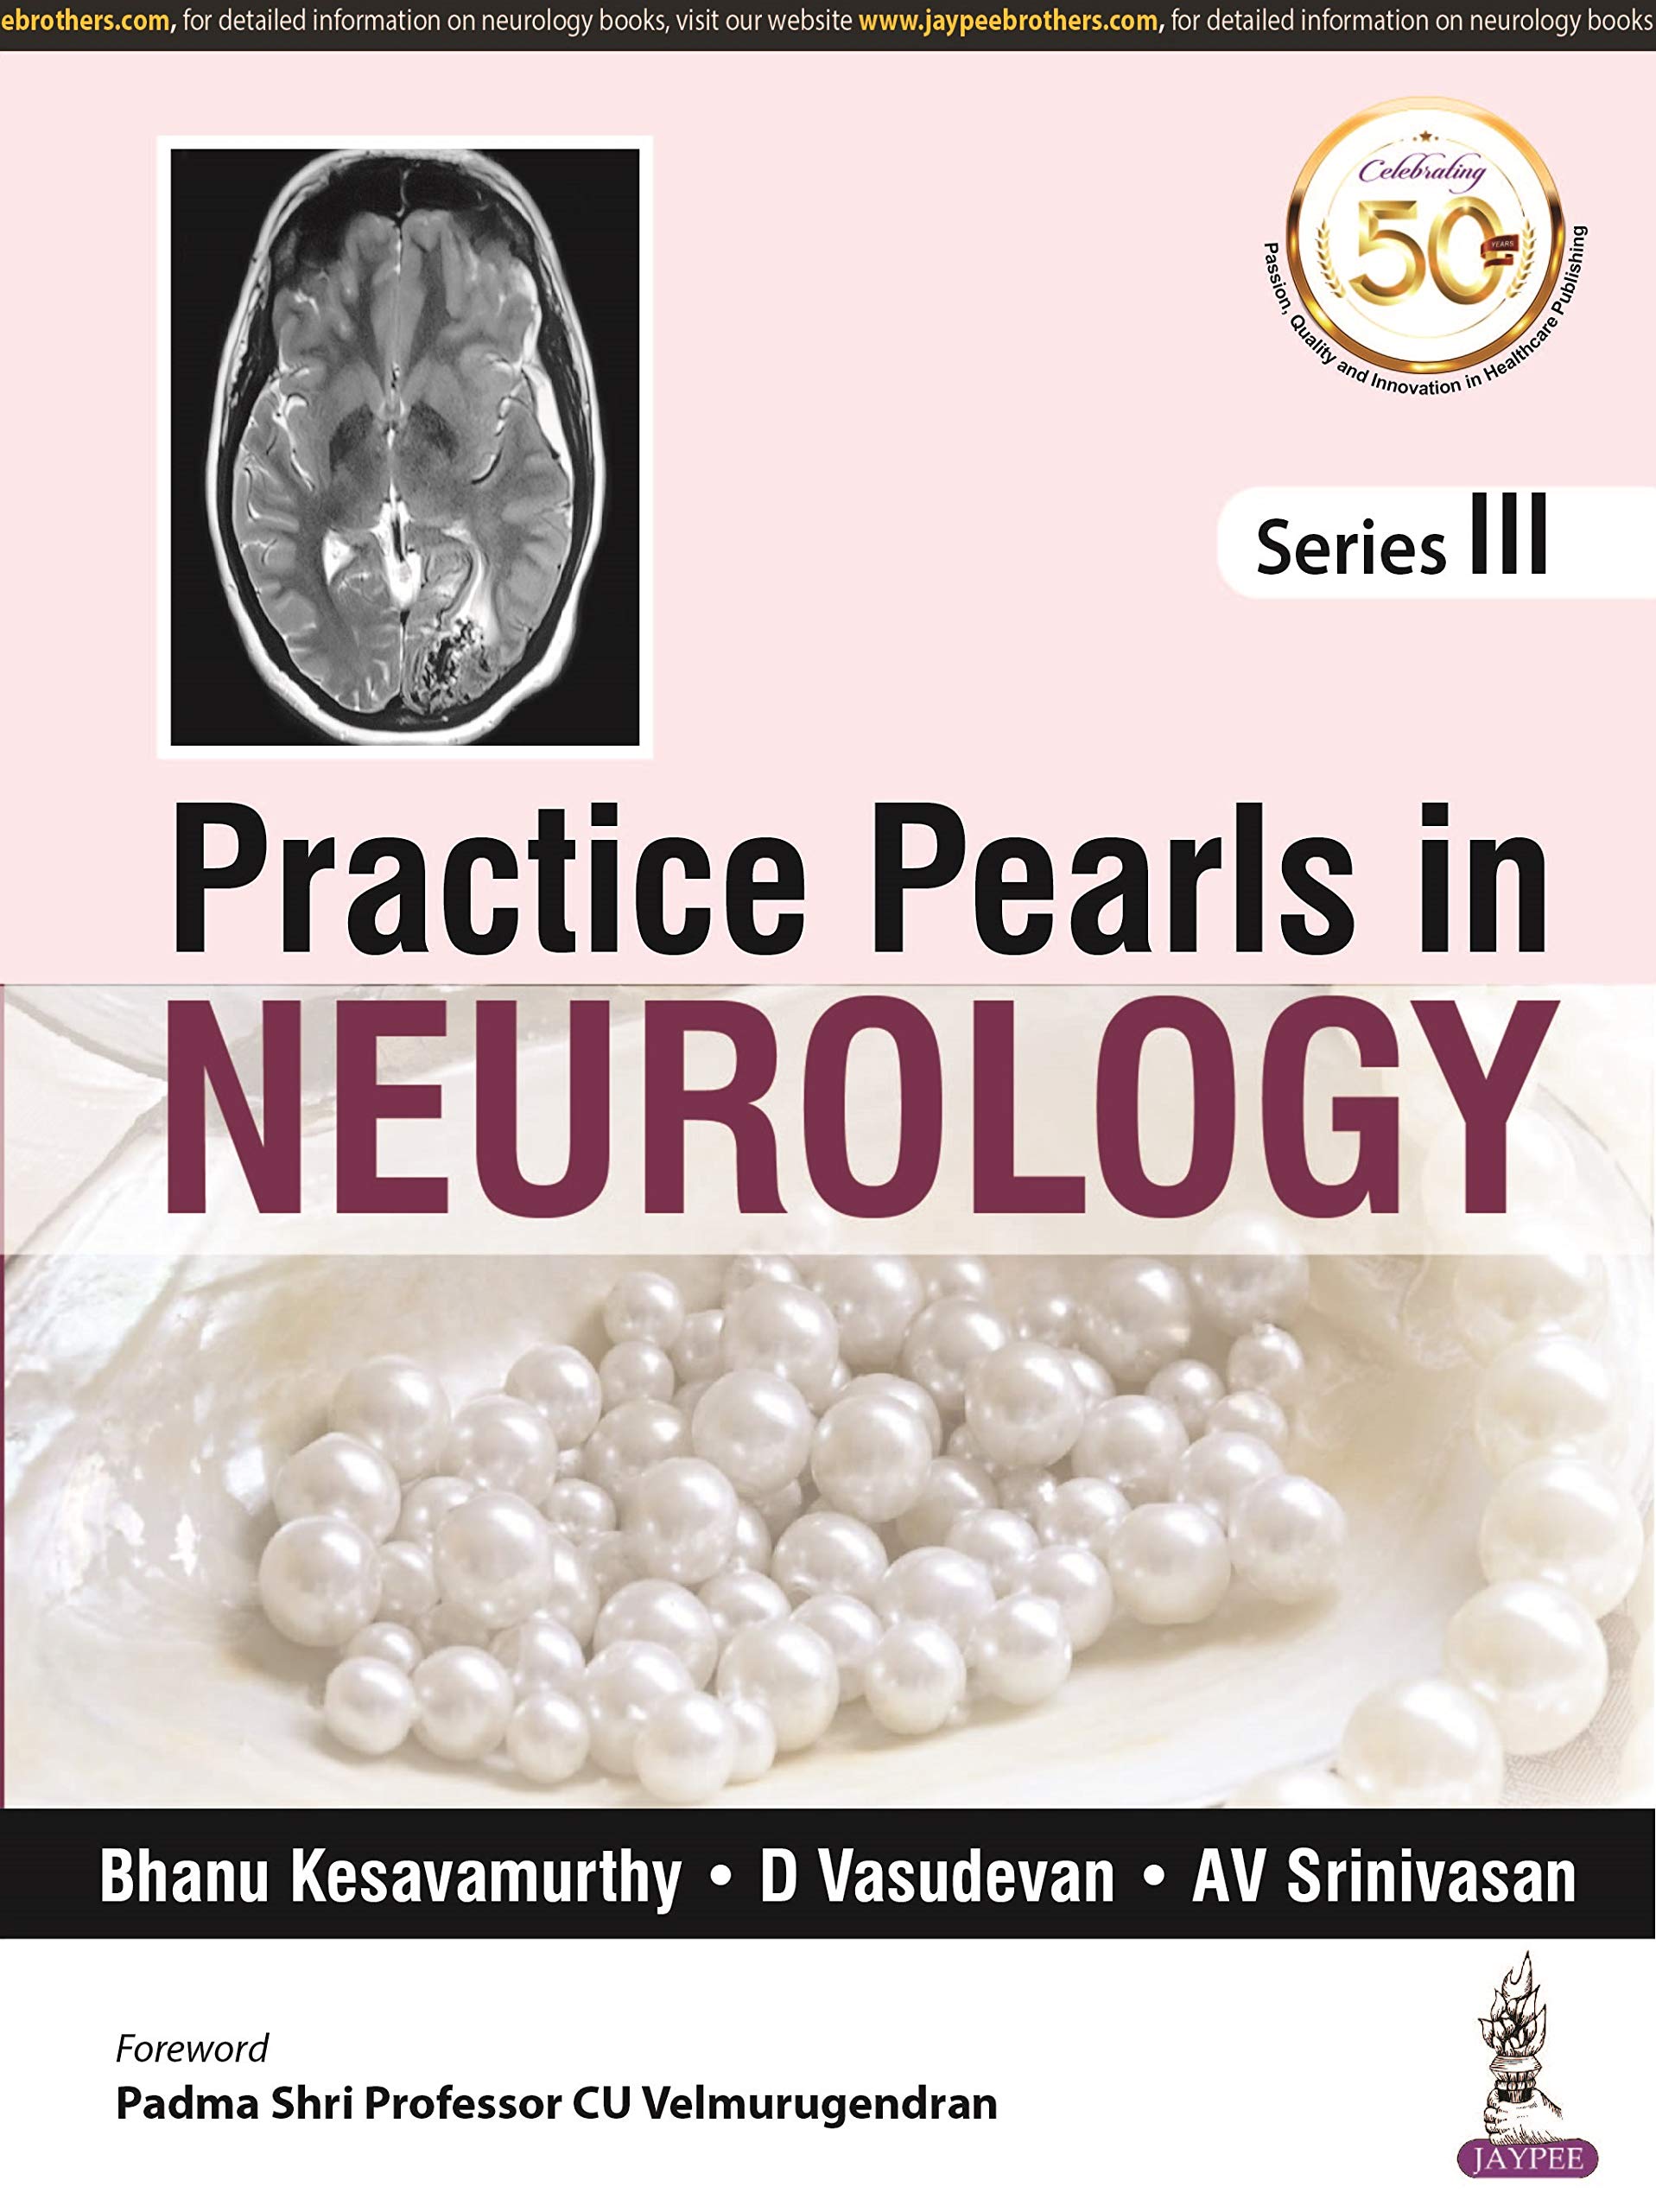 practice-pearls-in-neurology-series-iii